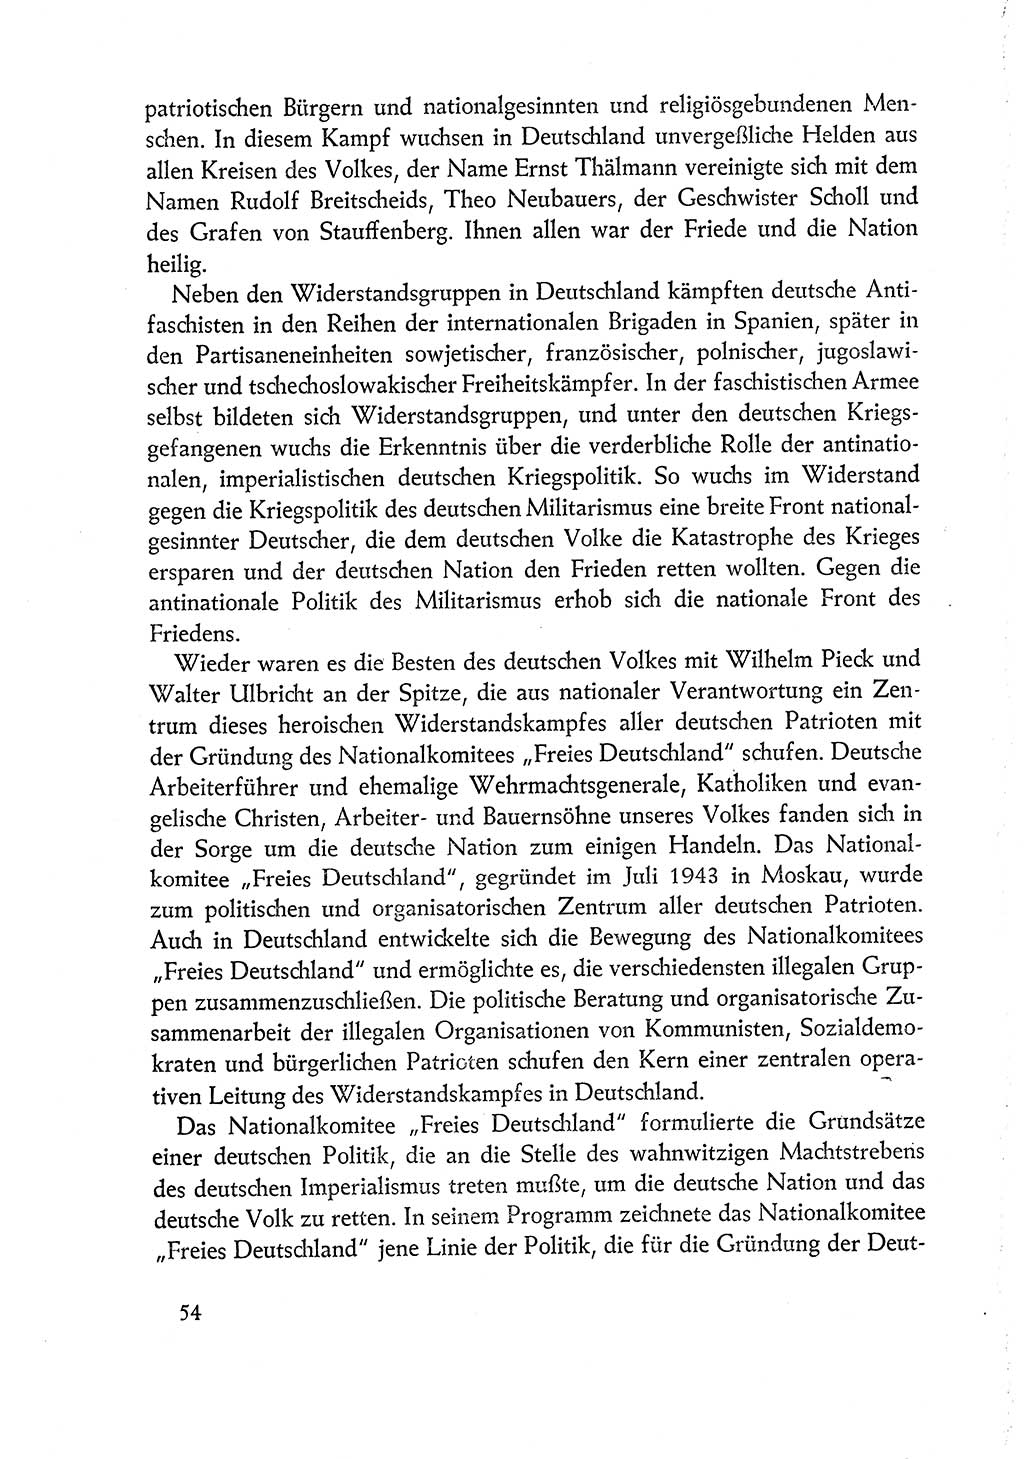 Dokumente der Sozialistischen Einheitspartei Deutschlands (SED) [Deutsche Demokratische Republik (DDR)] 1960-1961, Seite 54 (Dok. SED DDR 1960-1961, S. 54)